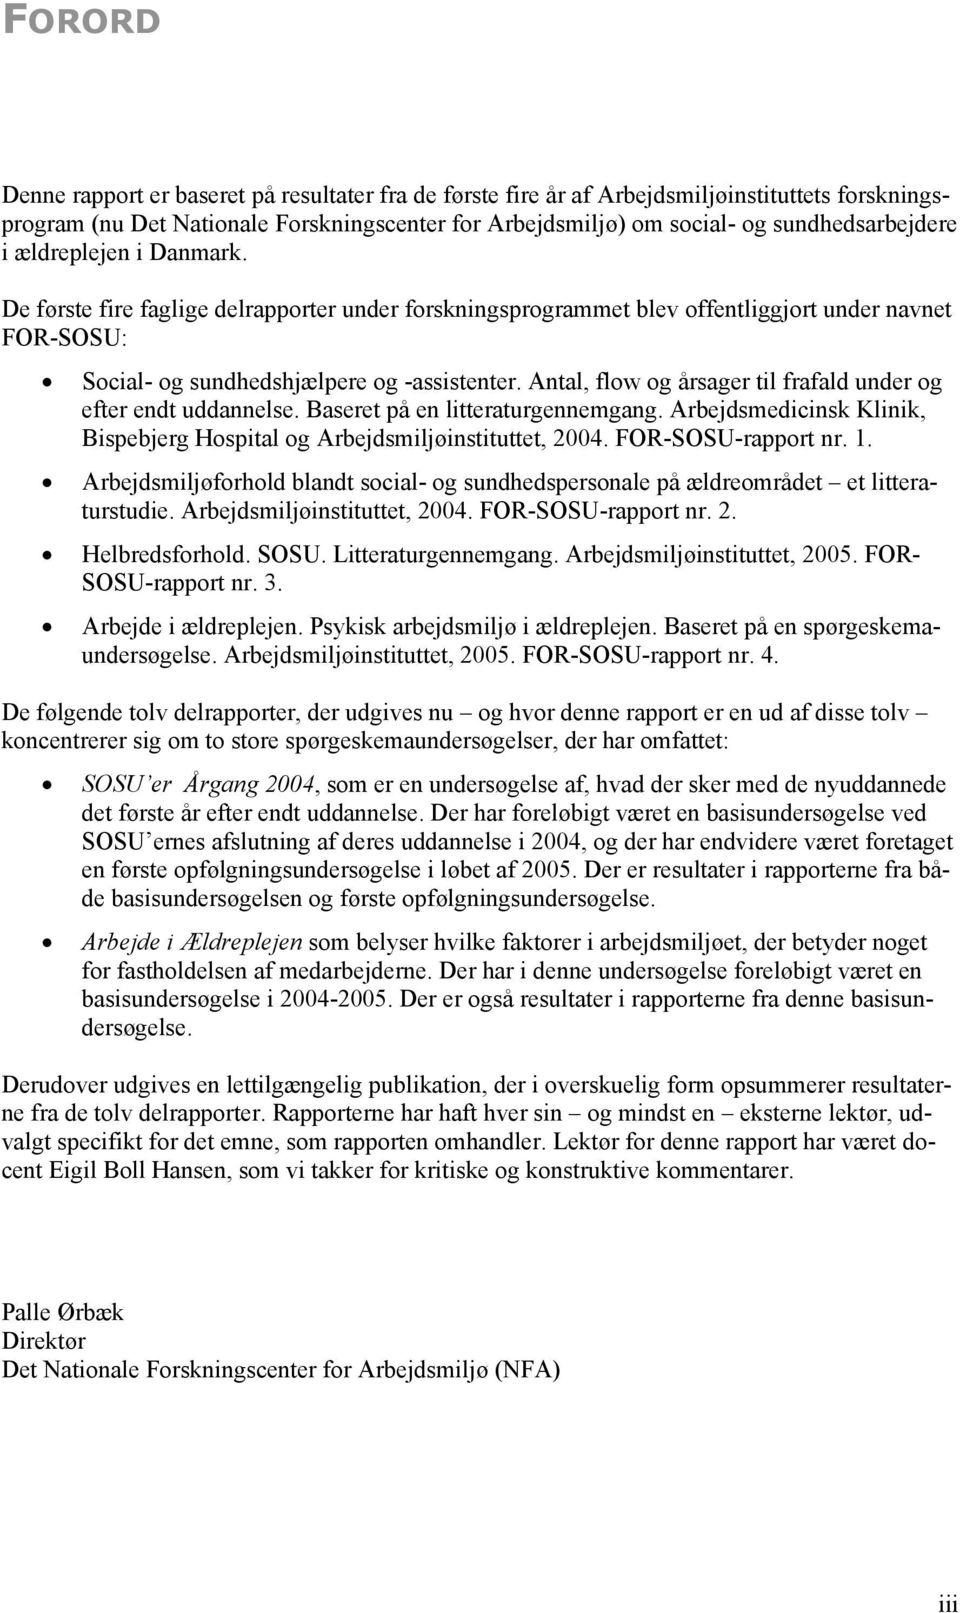 Antal, flow og årsager til frafald under og efter endt uddannelse. Baseret på en litteraturgennemgang. Arbejdsmedicinsk Klinik, Bispebjerg Hospital og Arbejdsmiljøinstituttet, 2004.